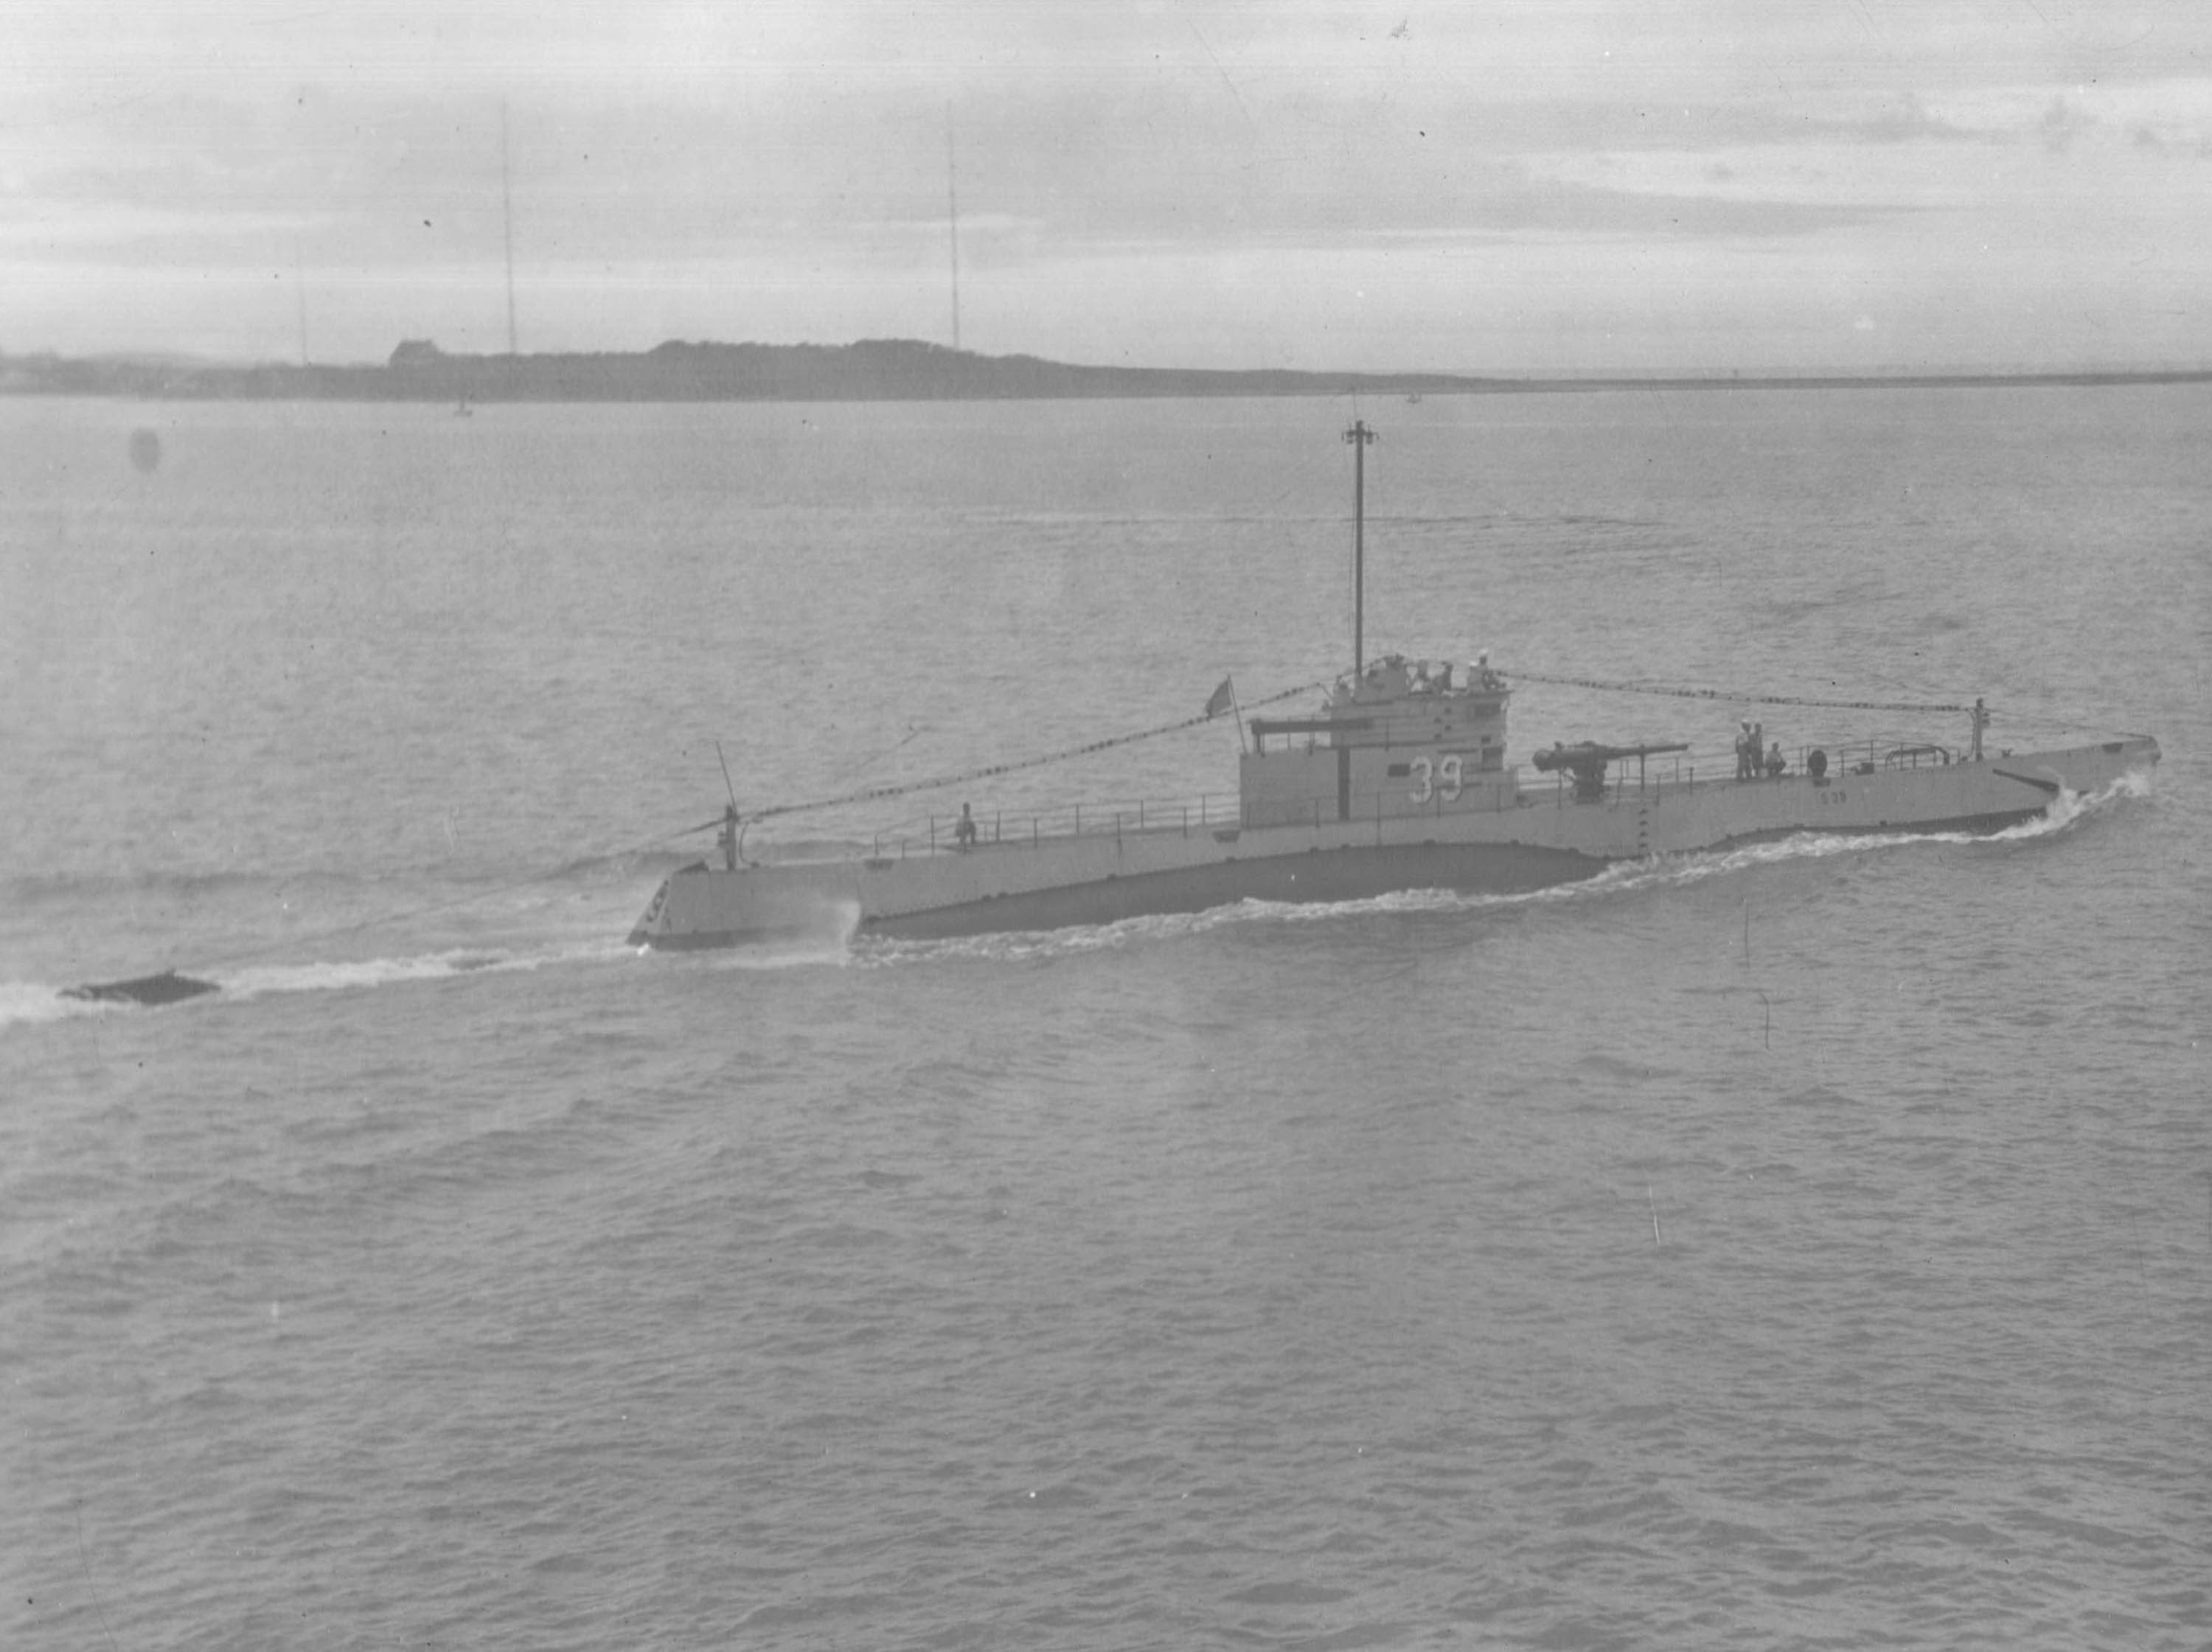 USS S-39 at Qingdao, Shandong Province, China, 13 Jun 1930